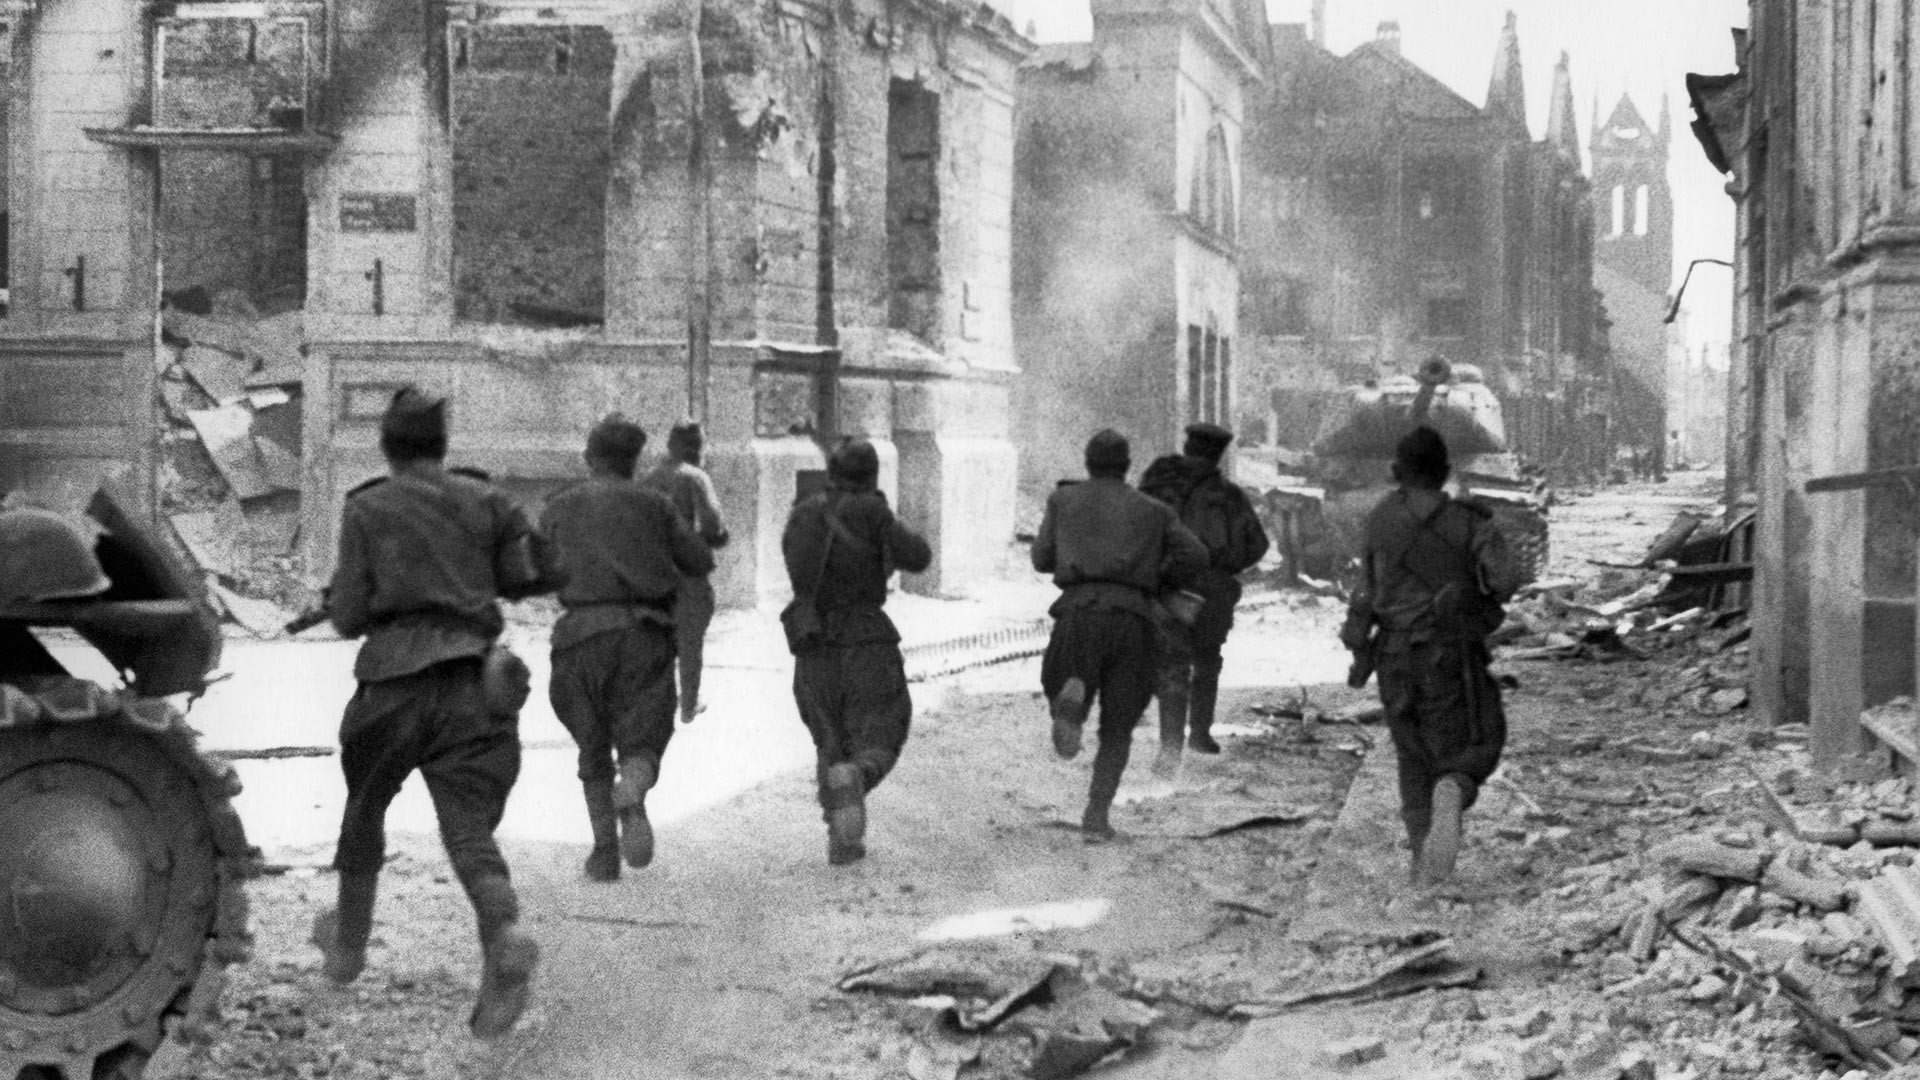 Војници Првог прибалтијског фронта наоружани аутоматима воде уличне борбе са немачко-фашистичким освајачима.